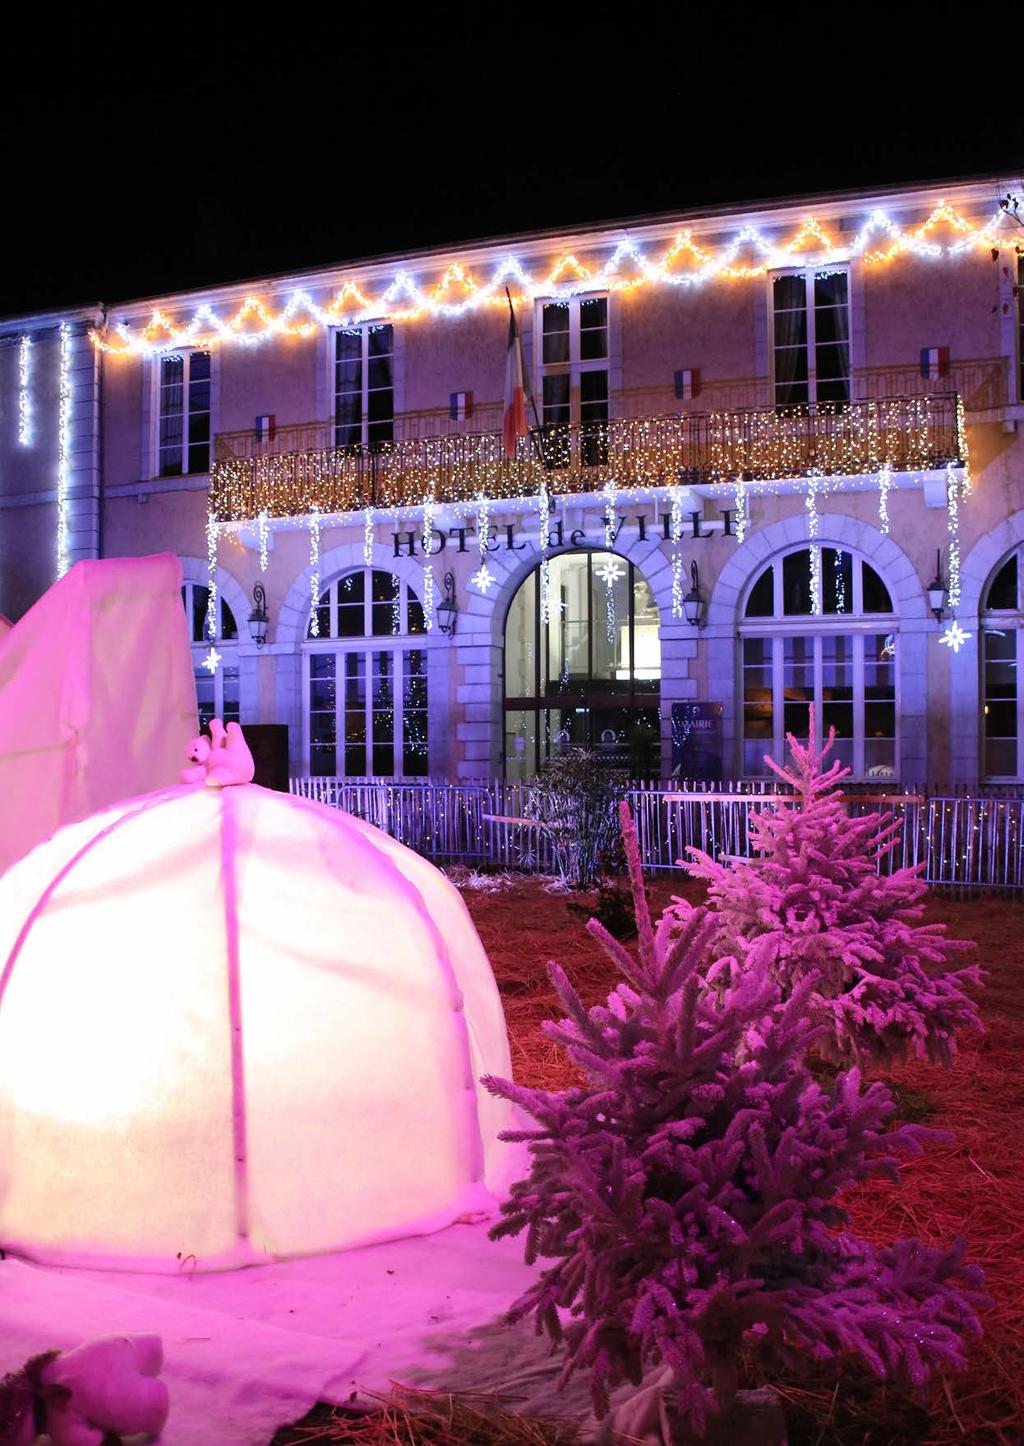 Meilleurs vœux 2019! Les illuminations sont un classique des fêtes à Oloron Sainte-Marie.